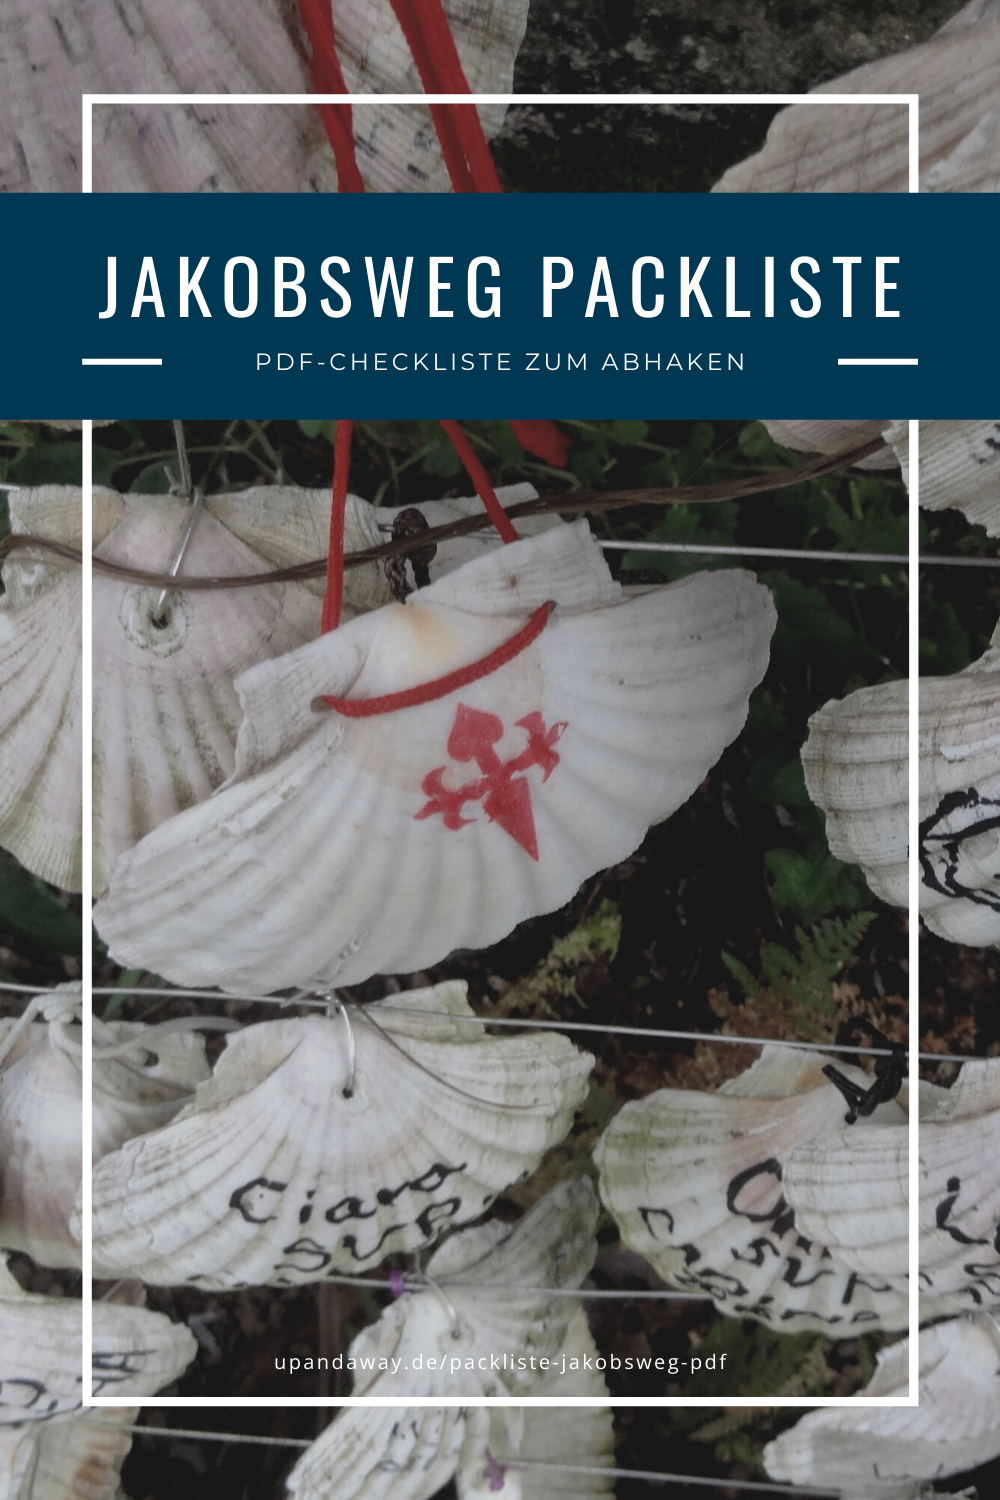 Packliste Jakobsweg: PDF-Checkliste mit Tipps zur Pilgerausrüstung